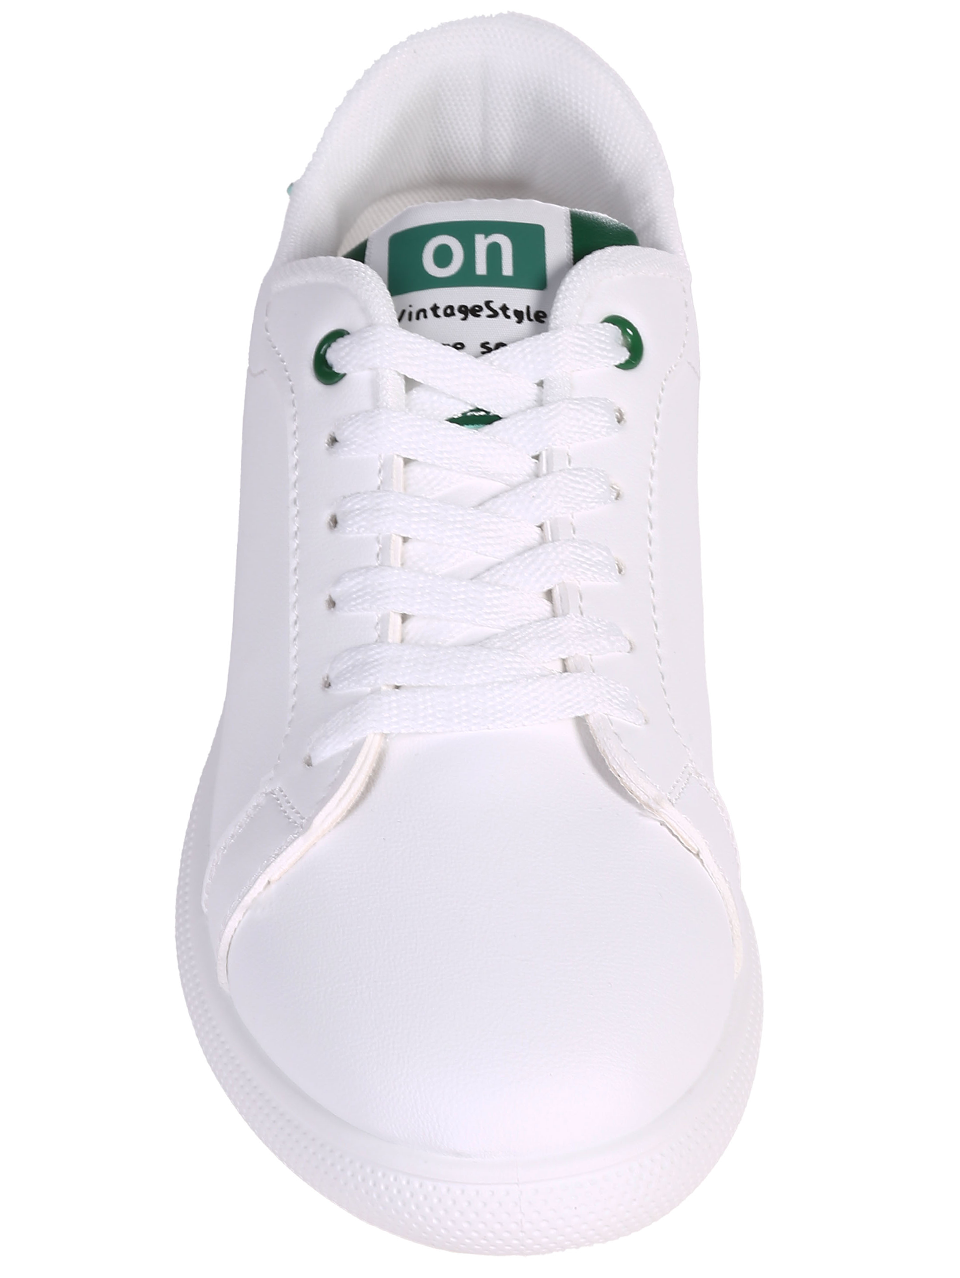 Eжедневни мъжки комфортни обувки в бял/зелен цвят 7U-24119 white/green